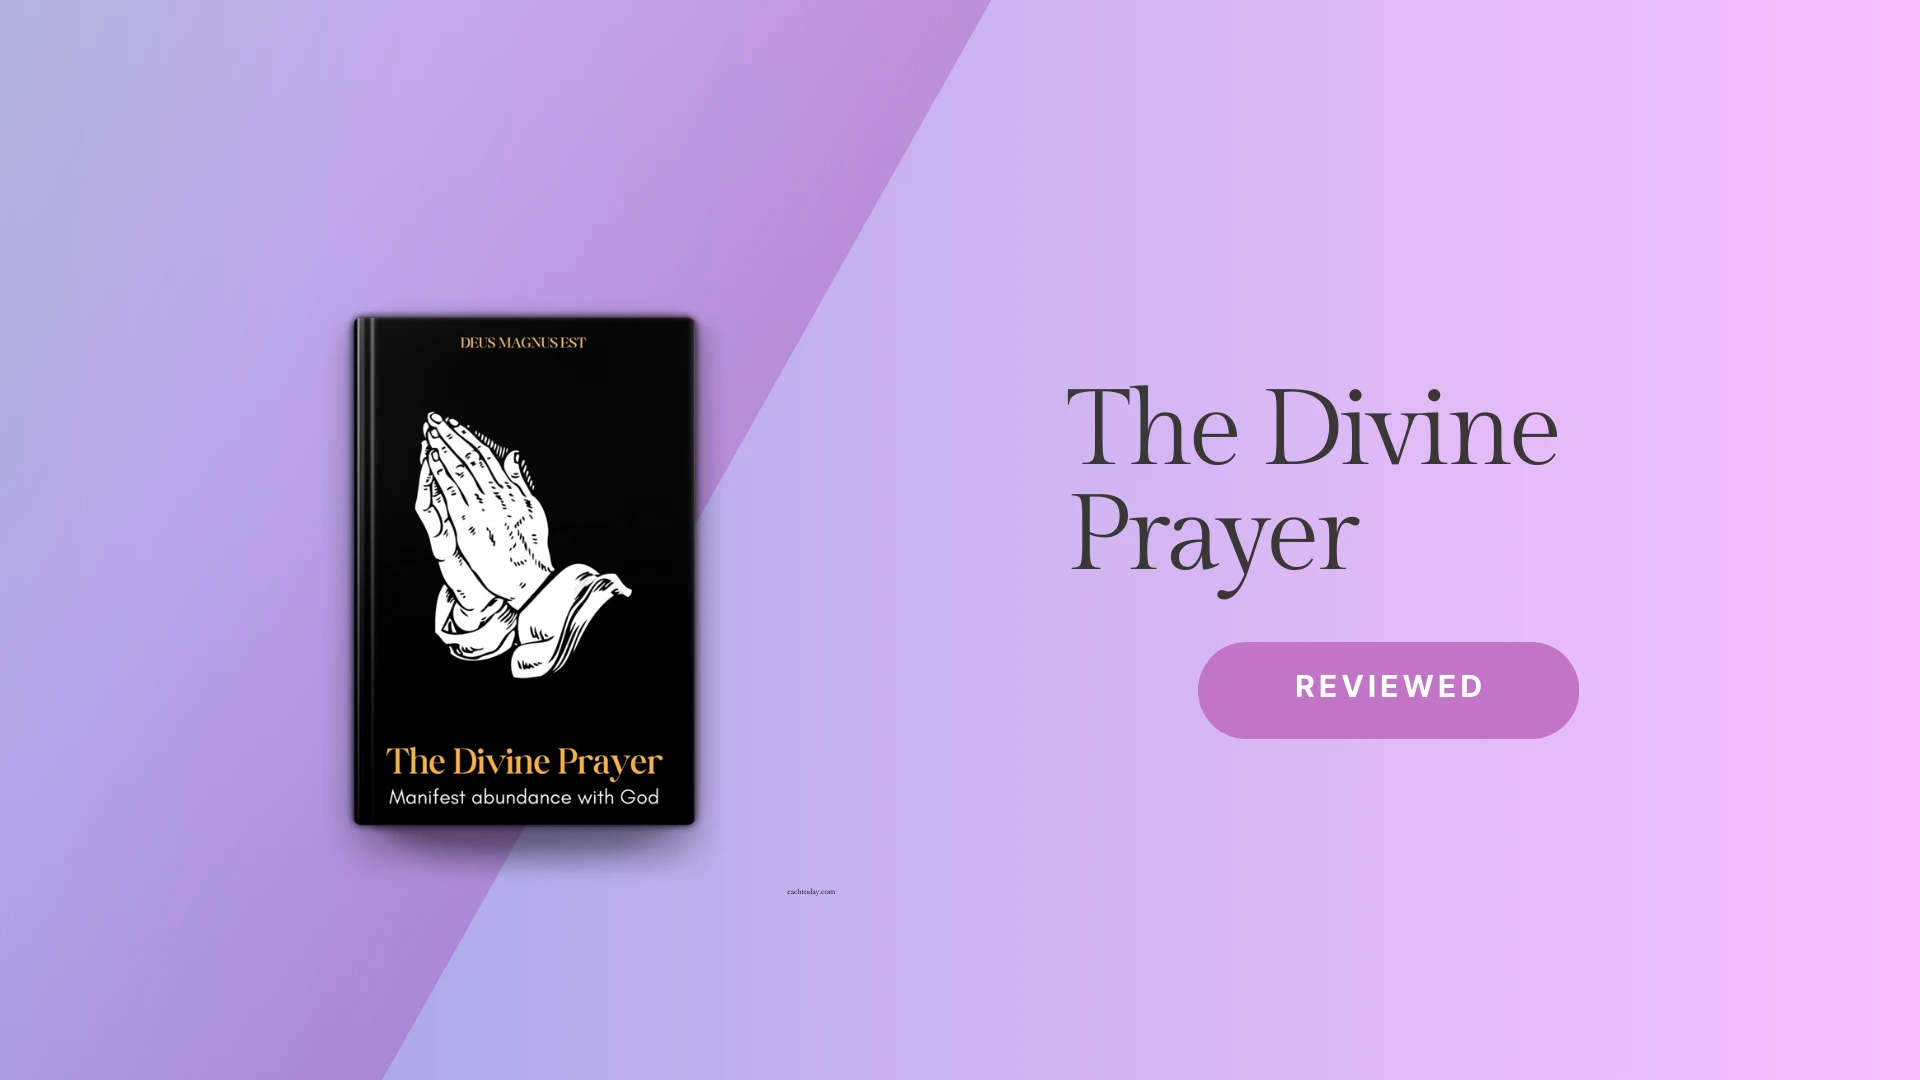 The Divine Prayer digital guide reviews